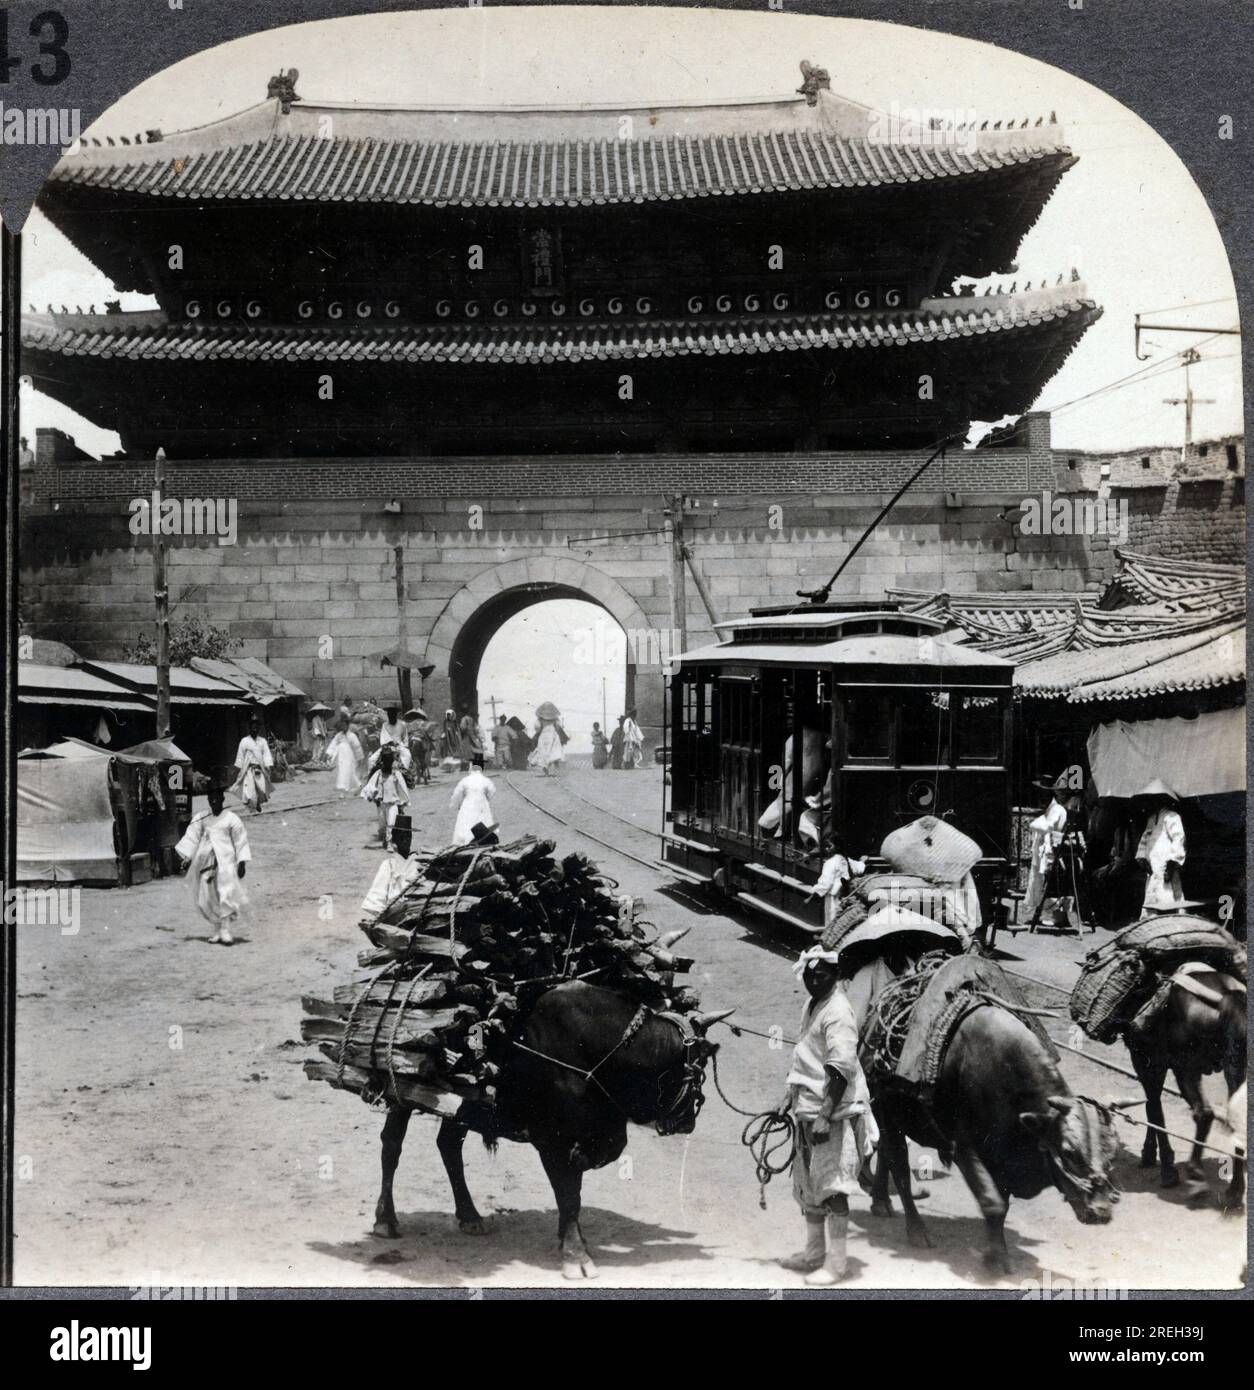 UN boeuf portant un Chargement de bois, A cote de la ligne de Tramway, devant Namdaemun, une porte monumentale de Seoul, Coree. Fotografie, 1904. . Stockfoto